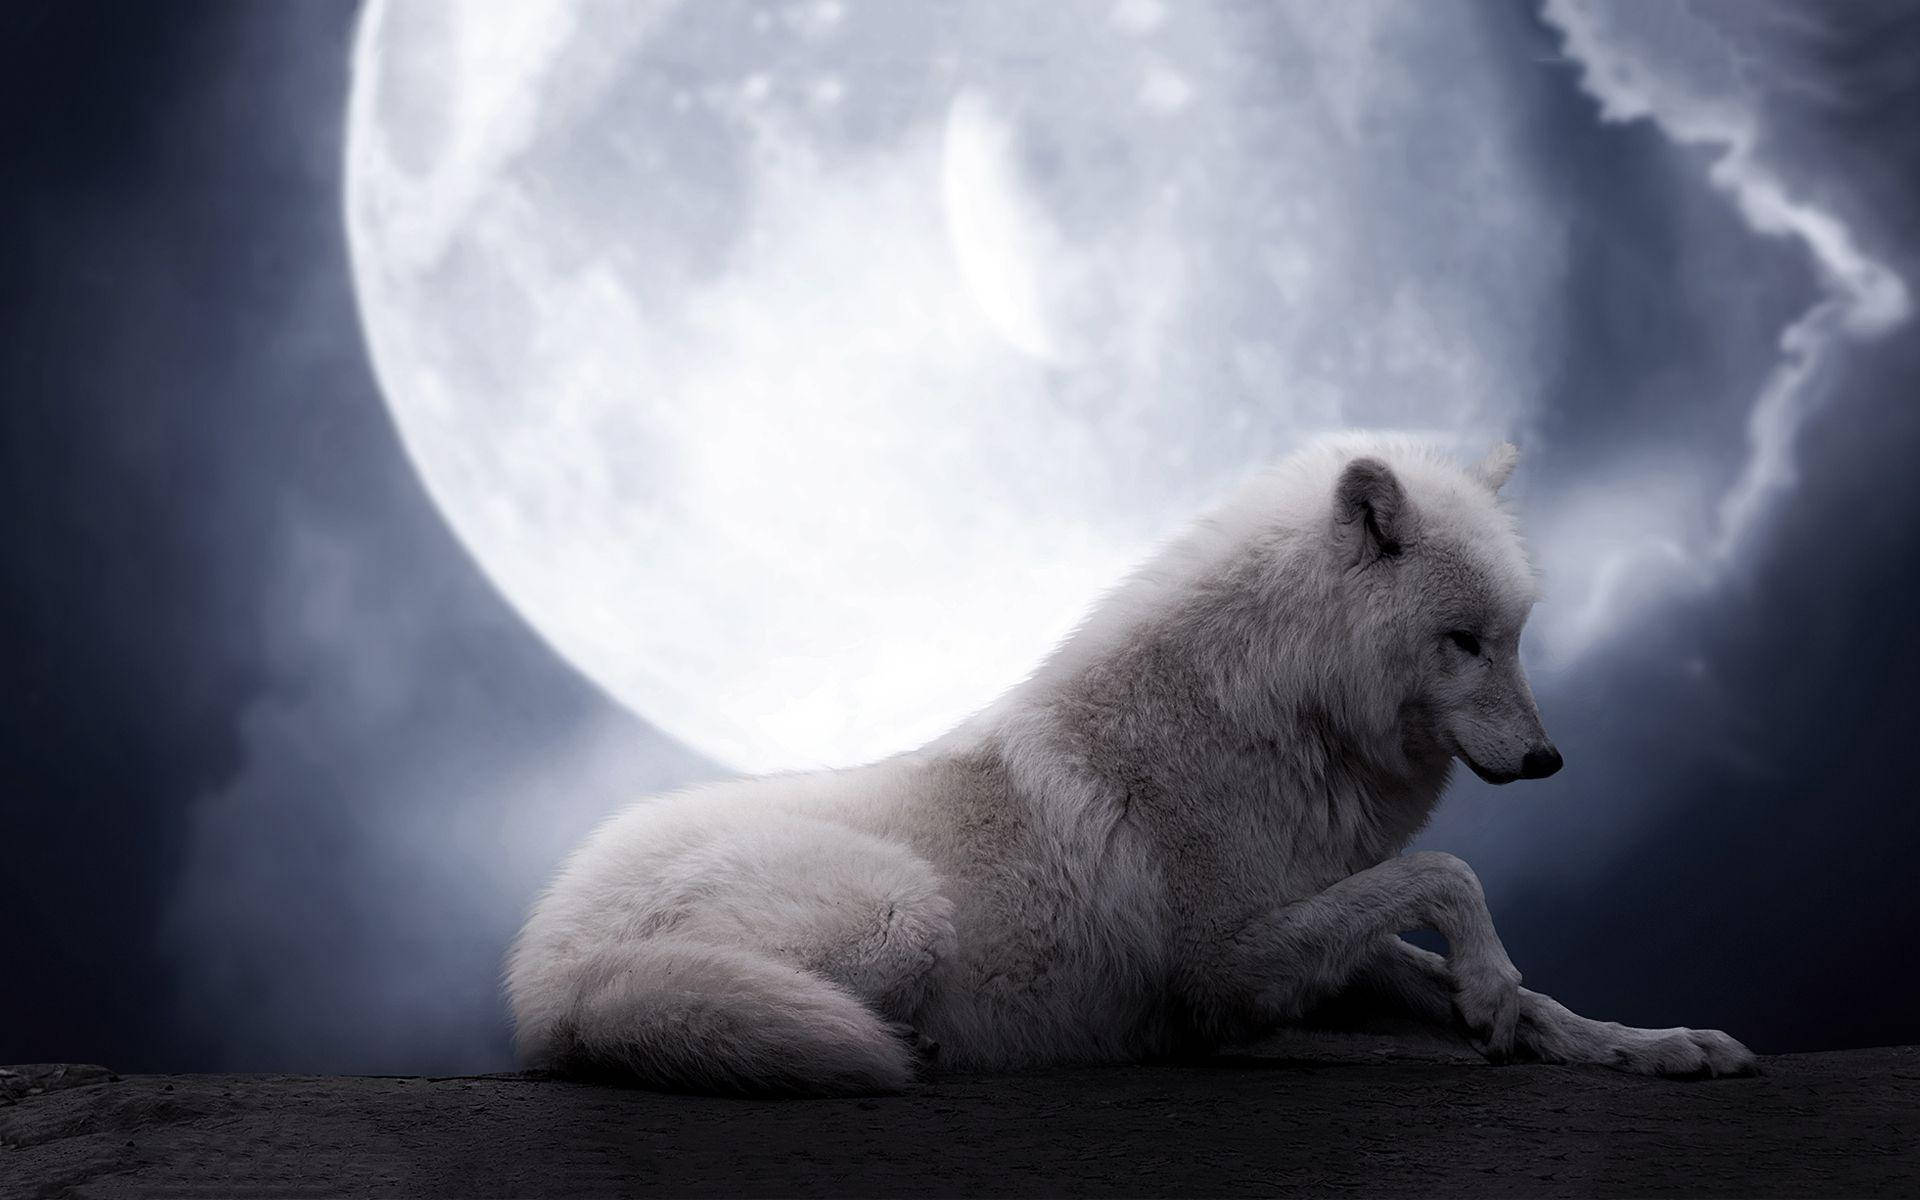 Tapet af Ulvemåne: Besøg månen med dette fantastiske ulvemåne-tapet! Wallpaper